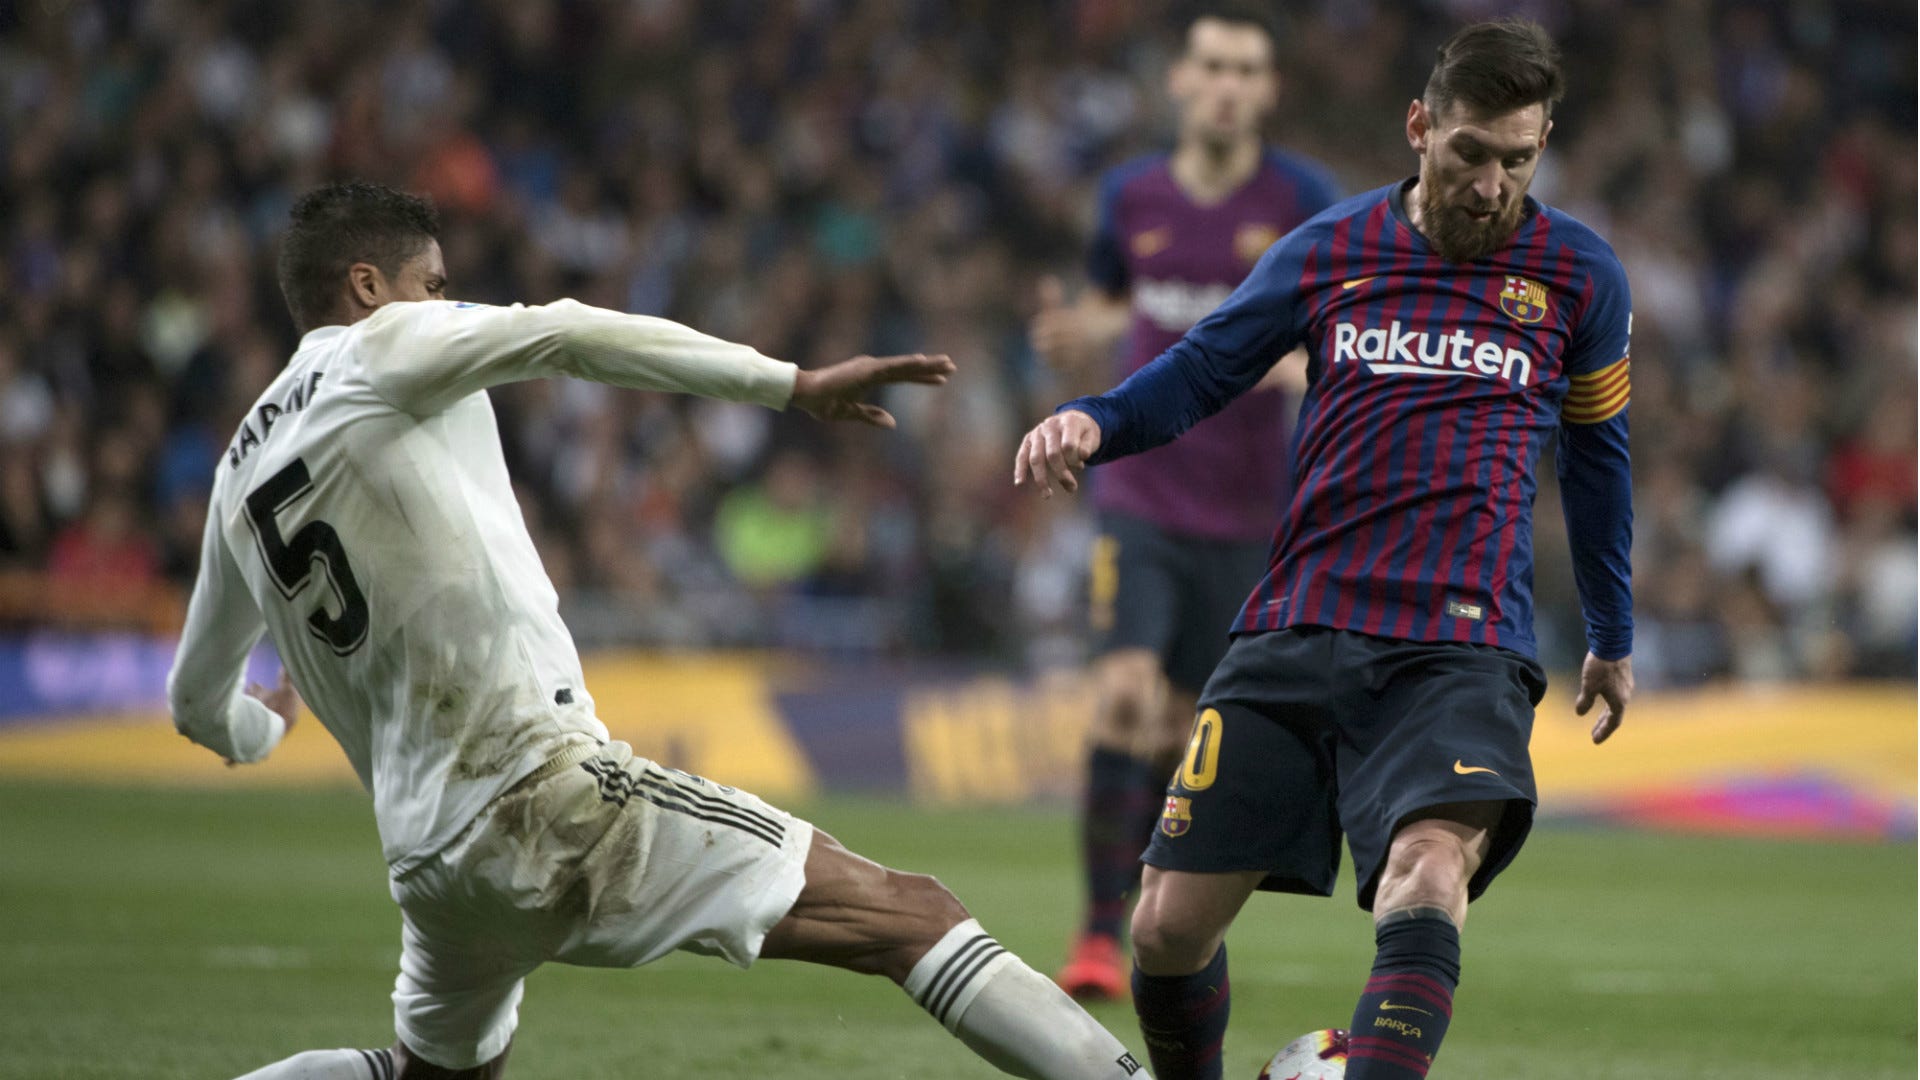 Bạn có biết Real Madrid đã cố gắng chặn đứng Lionel Messi khi anh ấy đang khoác áo Barcelona không? Nếu bạn là một fan của Messi và Barca, hãy xem hình ảnh này để hiểu thêm về sự cạnh tranh giữa hai CLB hàng đầu của Tây Ban Nha.